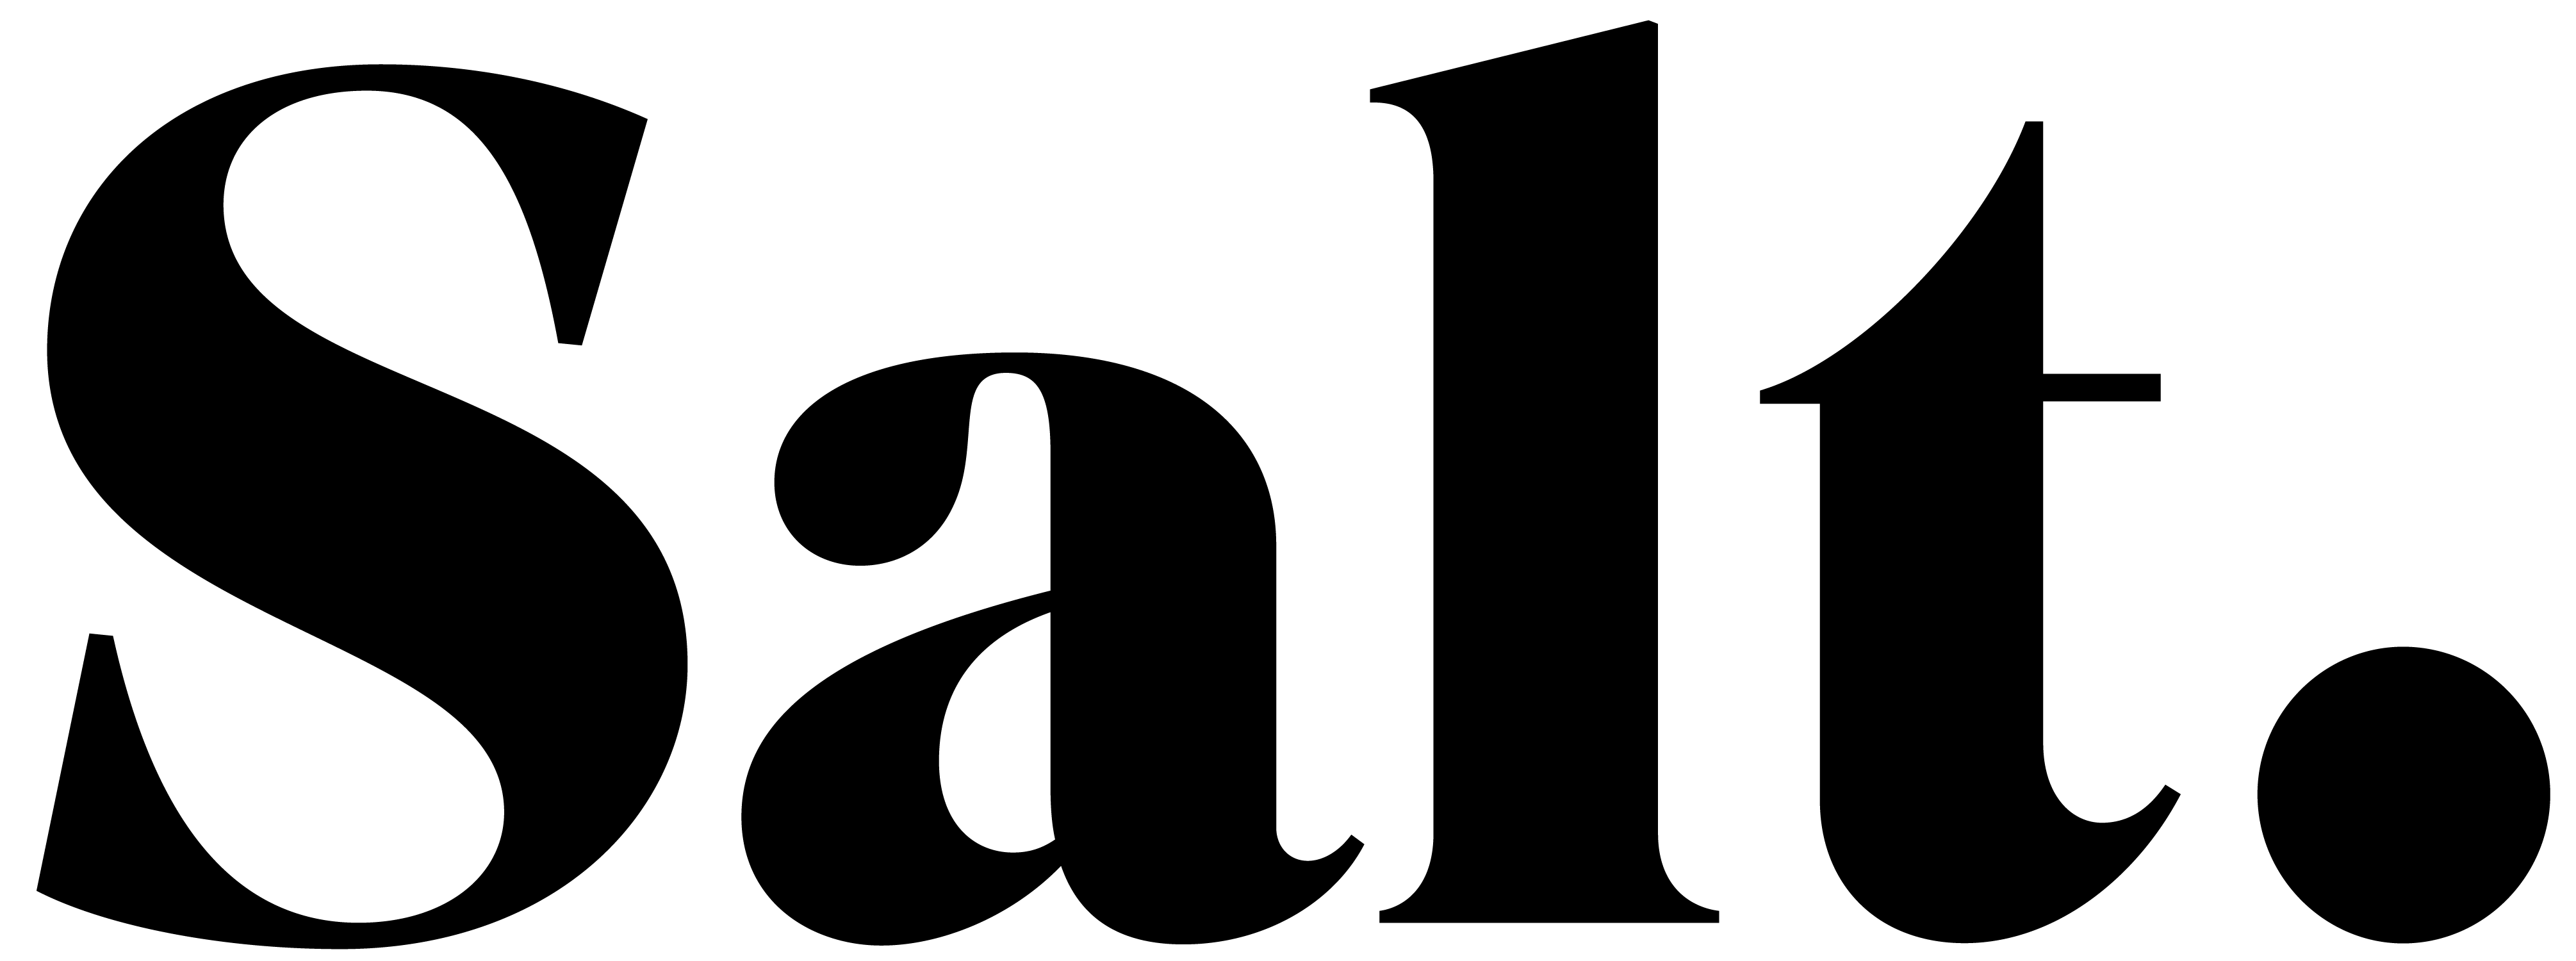 Logo Salt